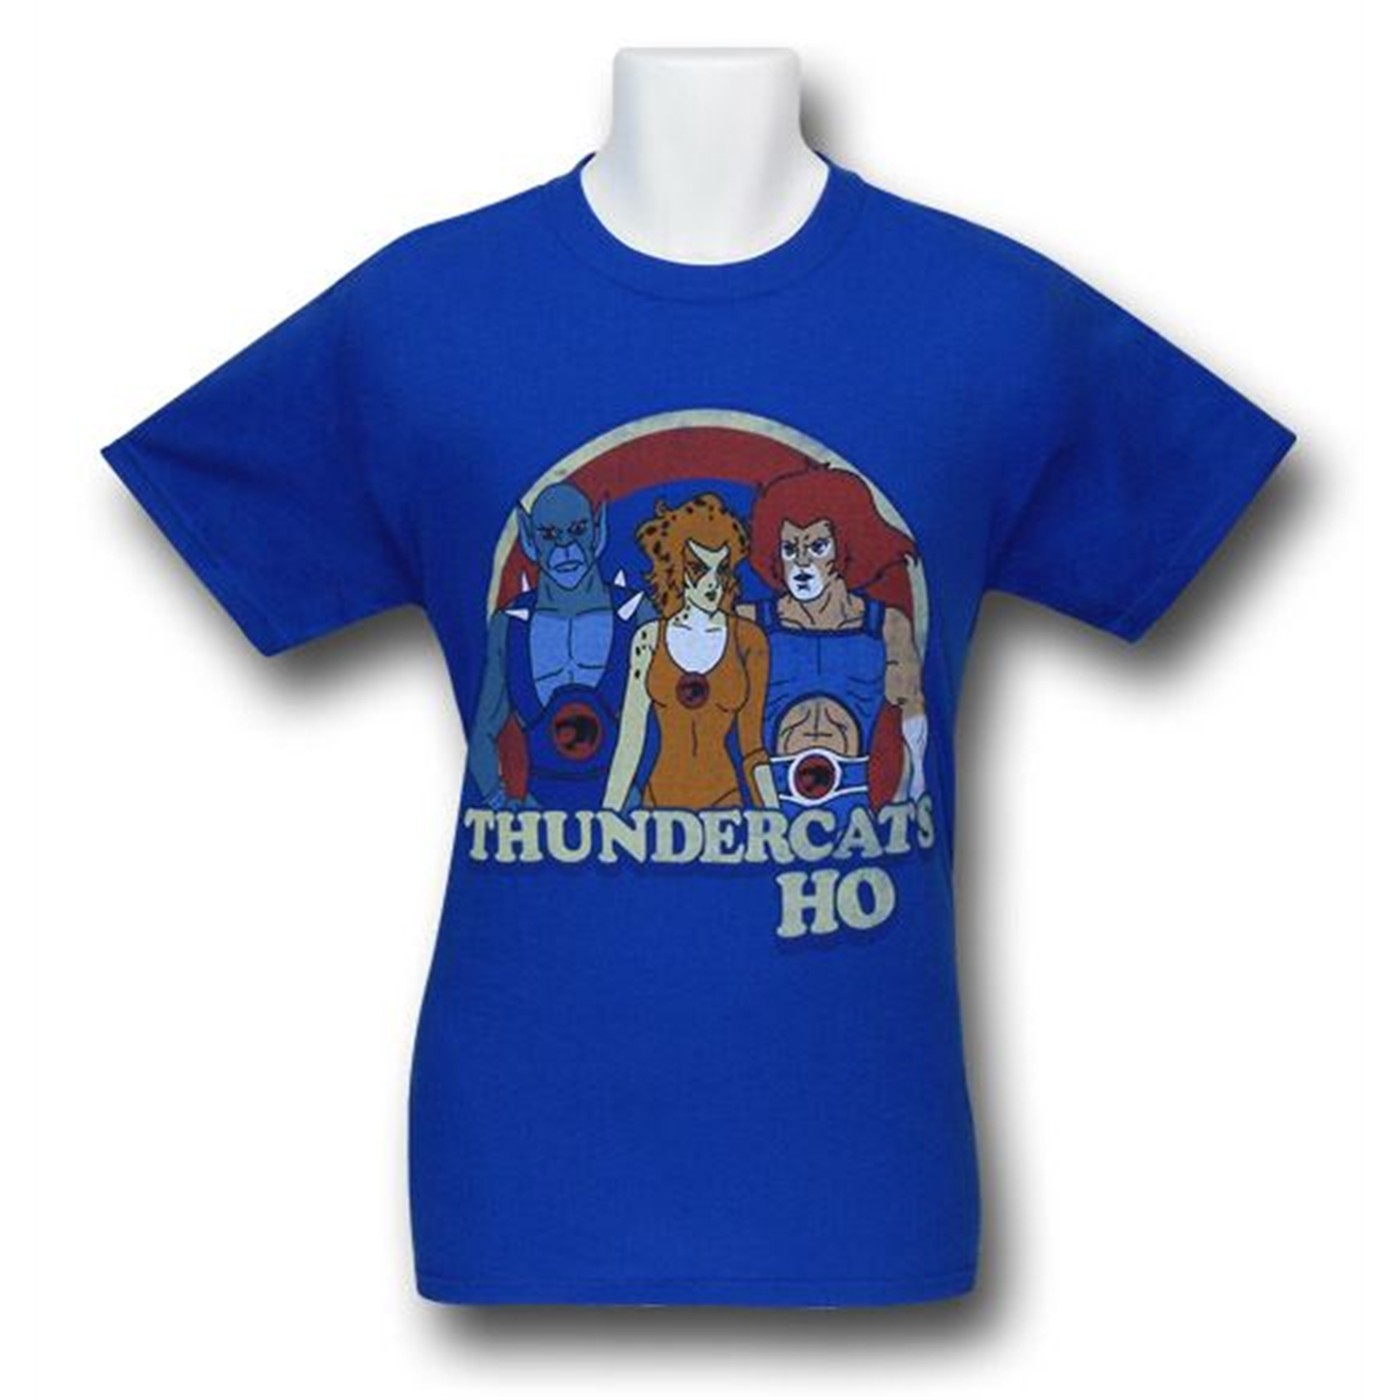 Thundercats, hooooooooo